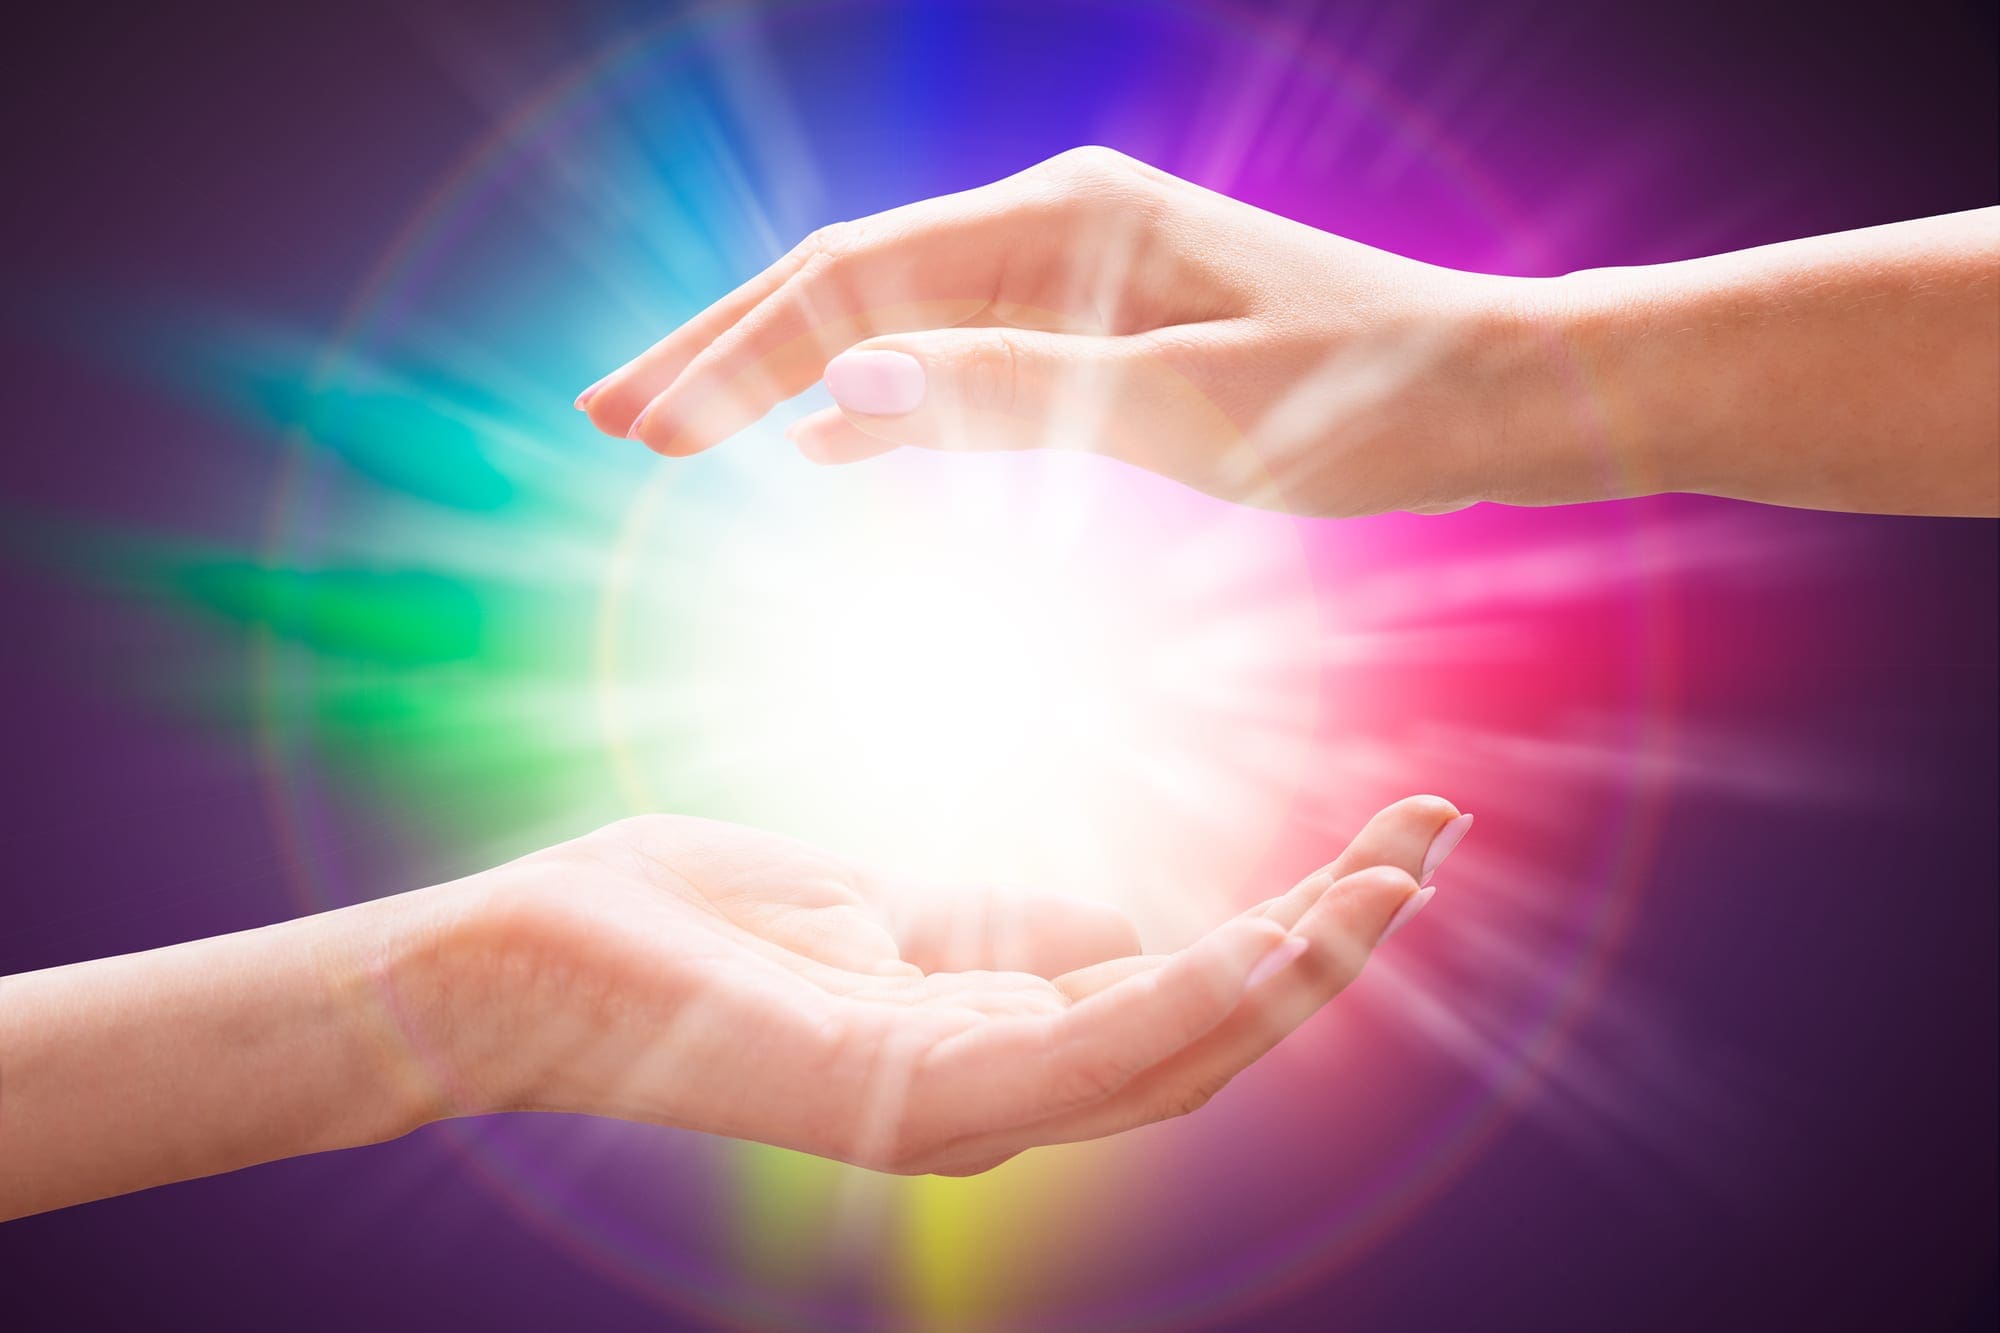 Reiki Healing Hands Image